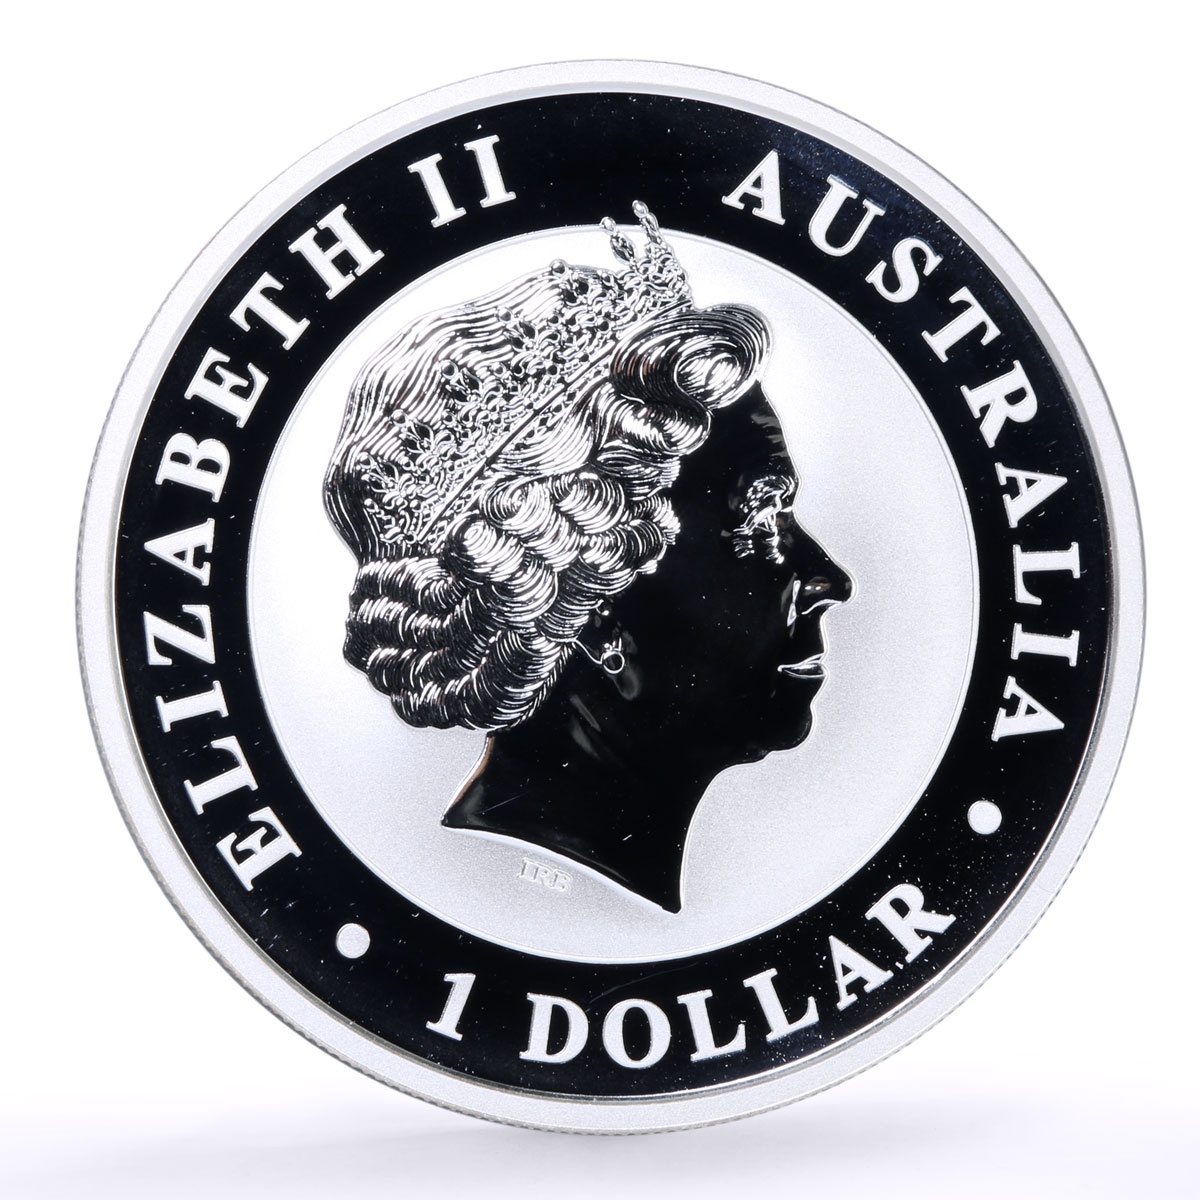 Australia 1 dollar Endangered Wildlife Eagle Bird Fauna gilded silver coin 2017